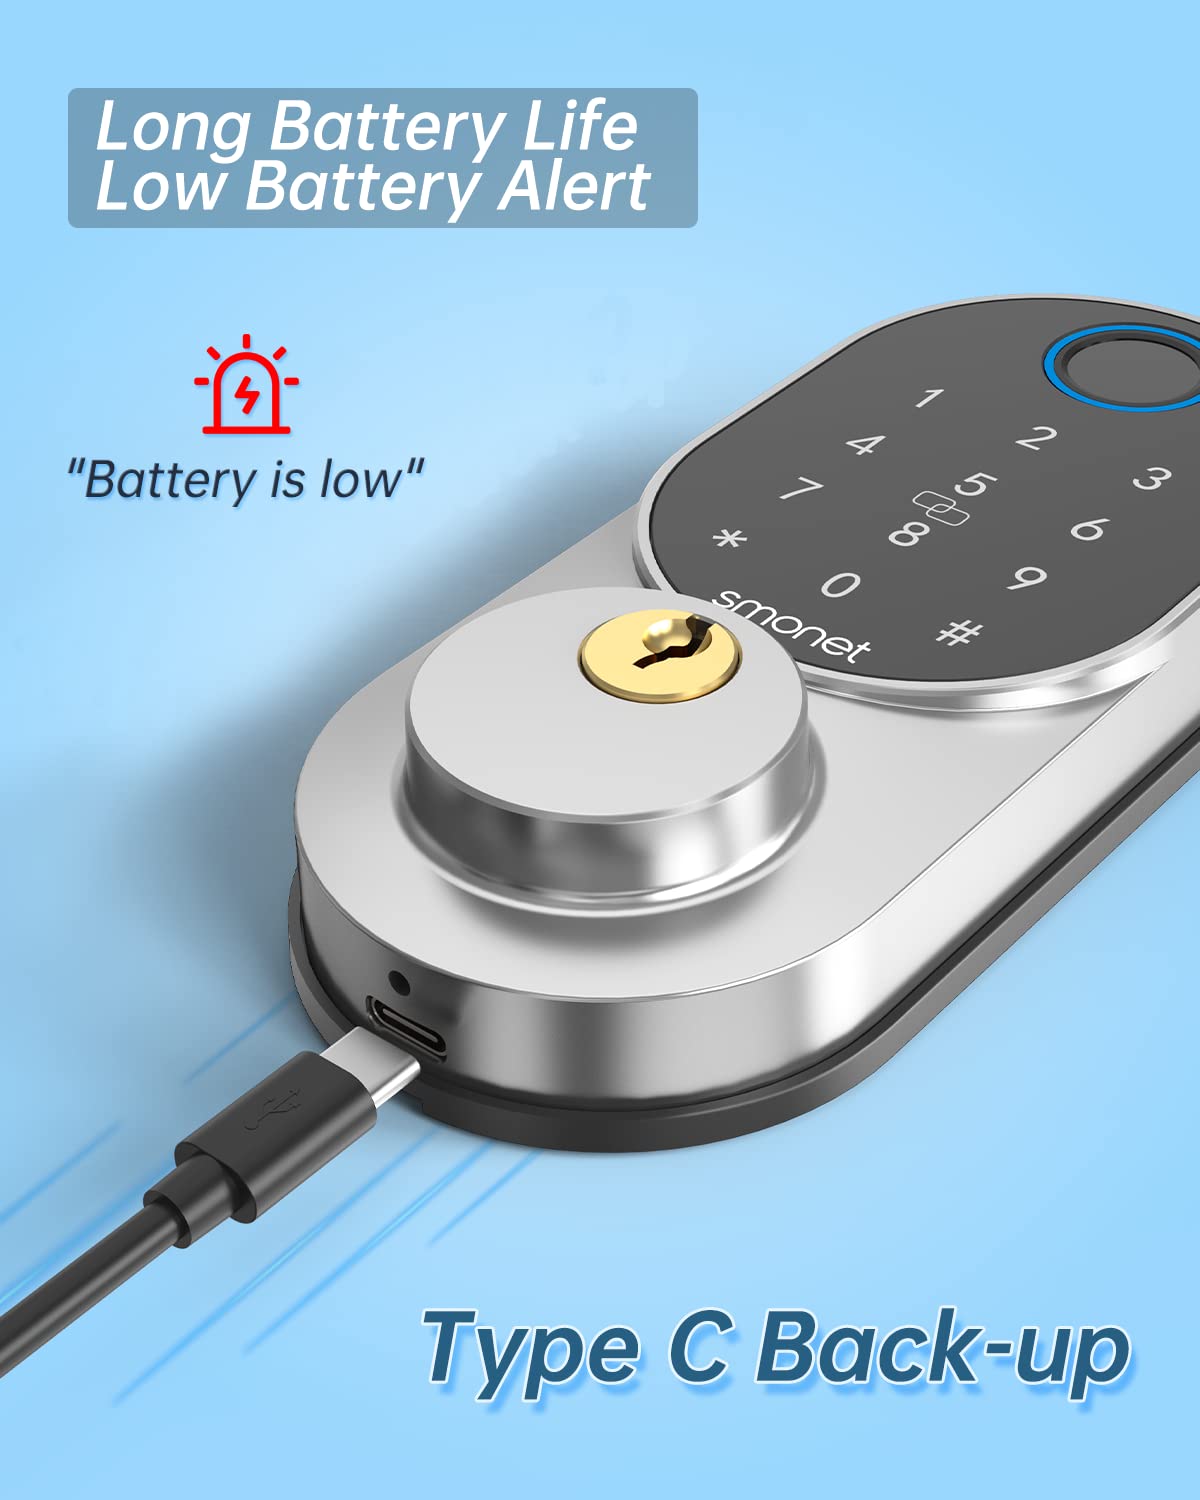 low battery alert locks